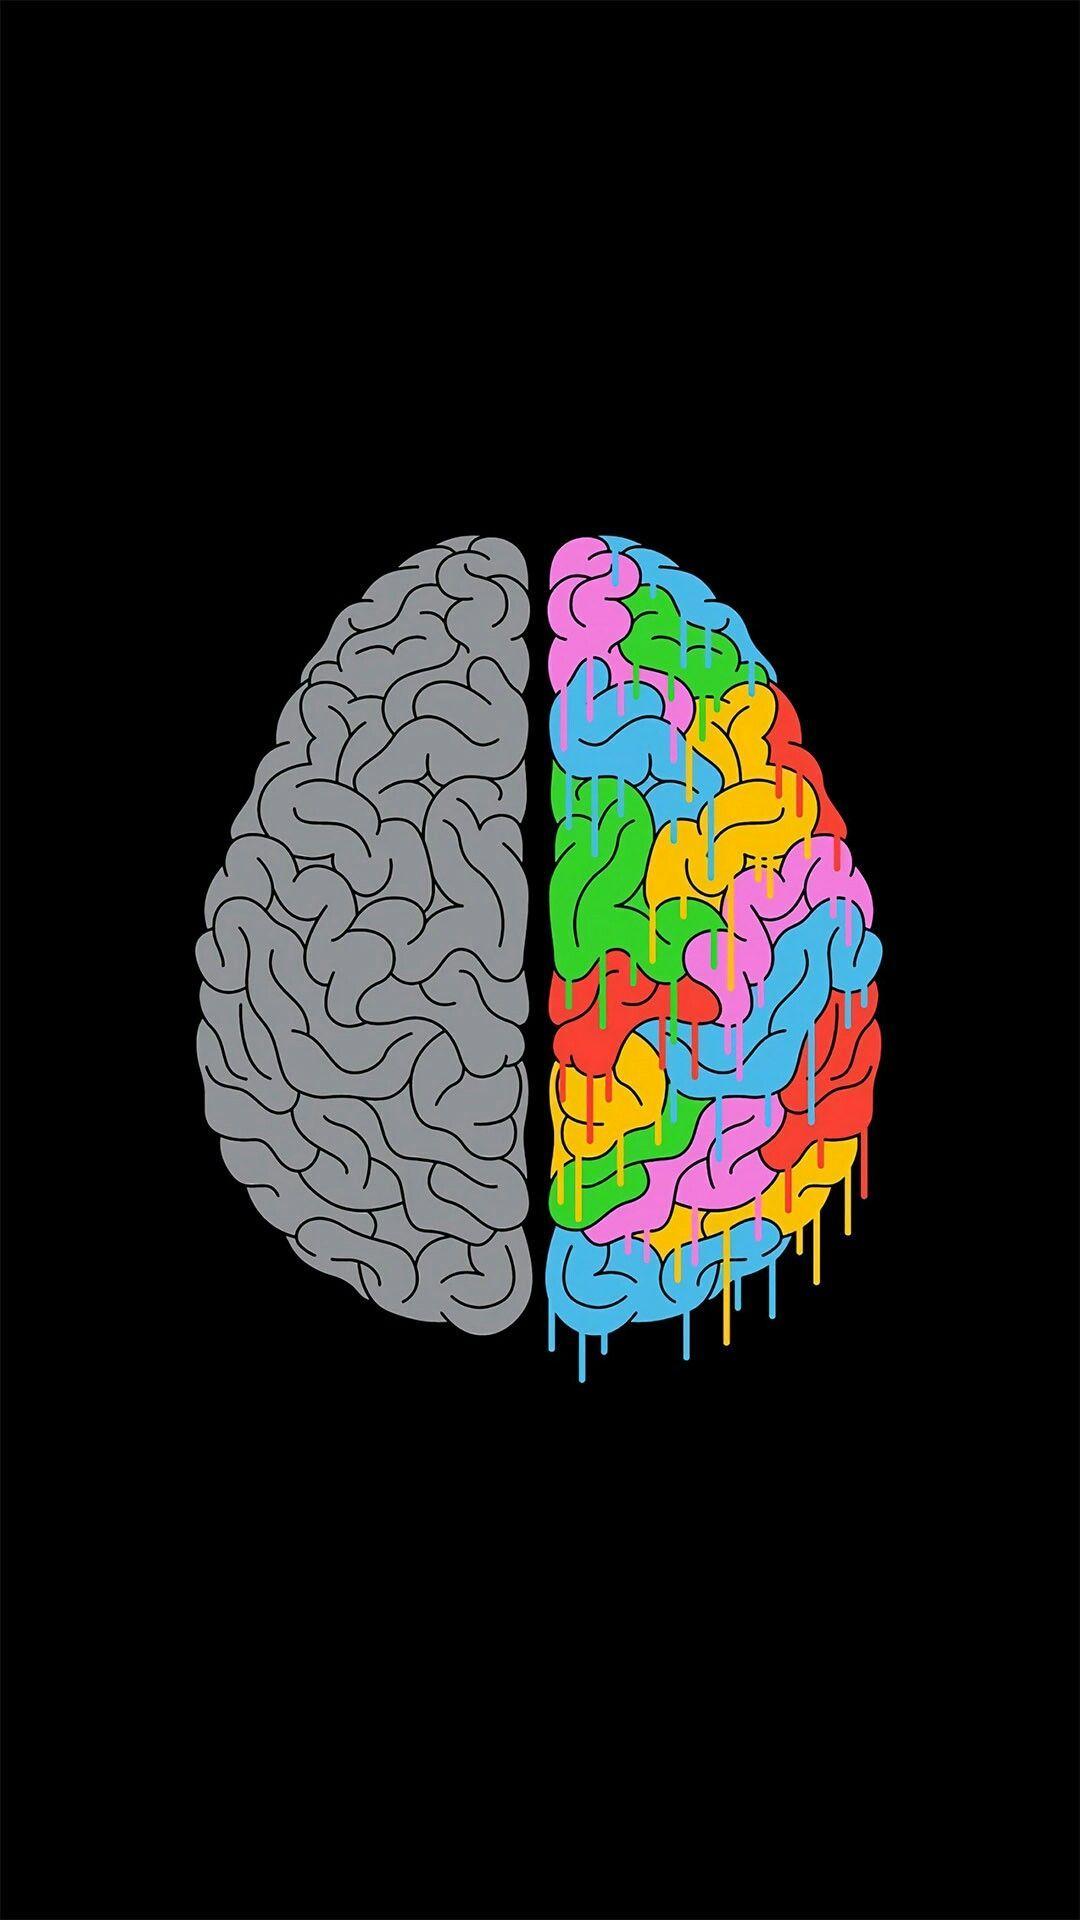 Brain Anatomy Wallpaper